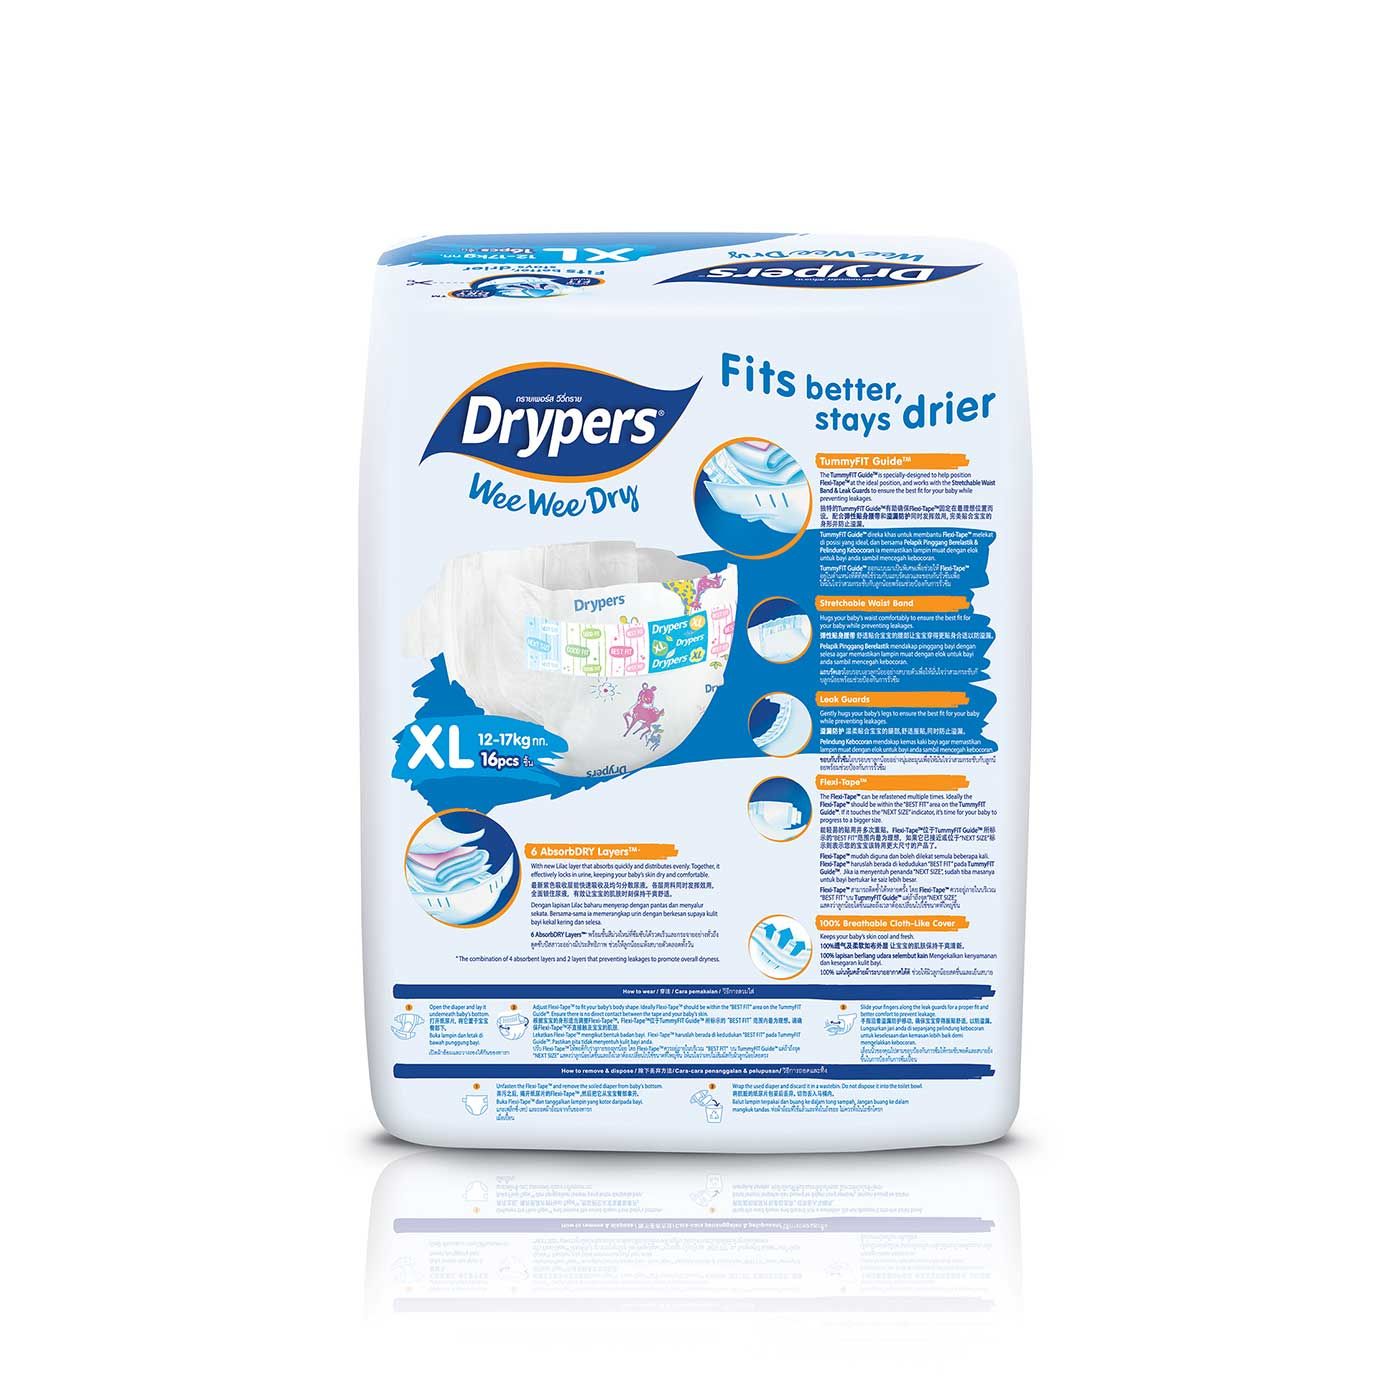 Drypers Wee Wee Dry - XL 16s - 2